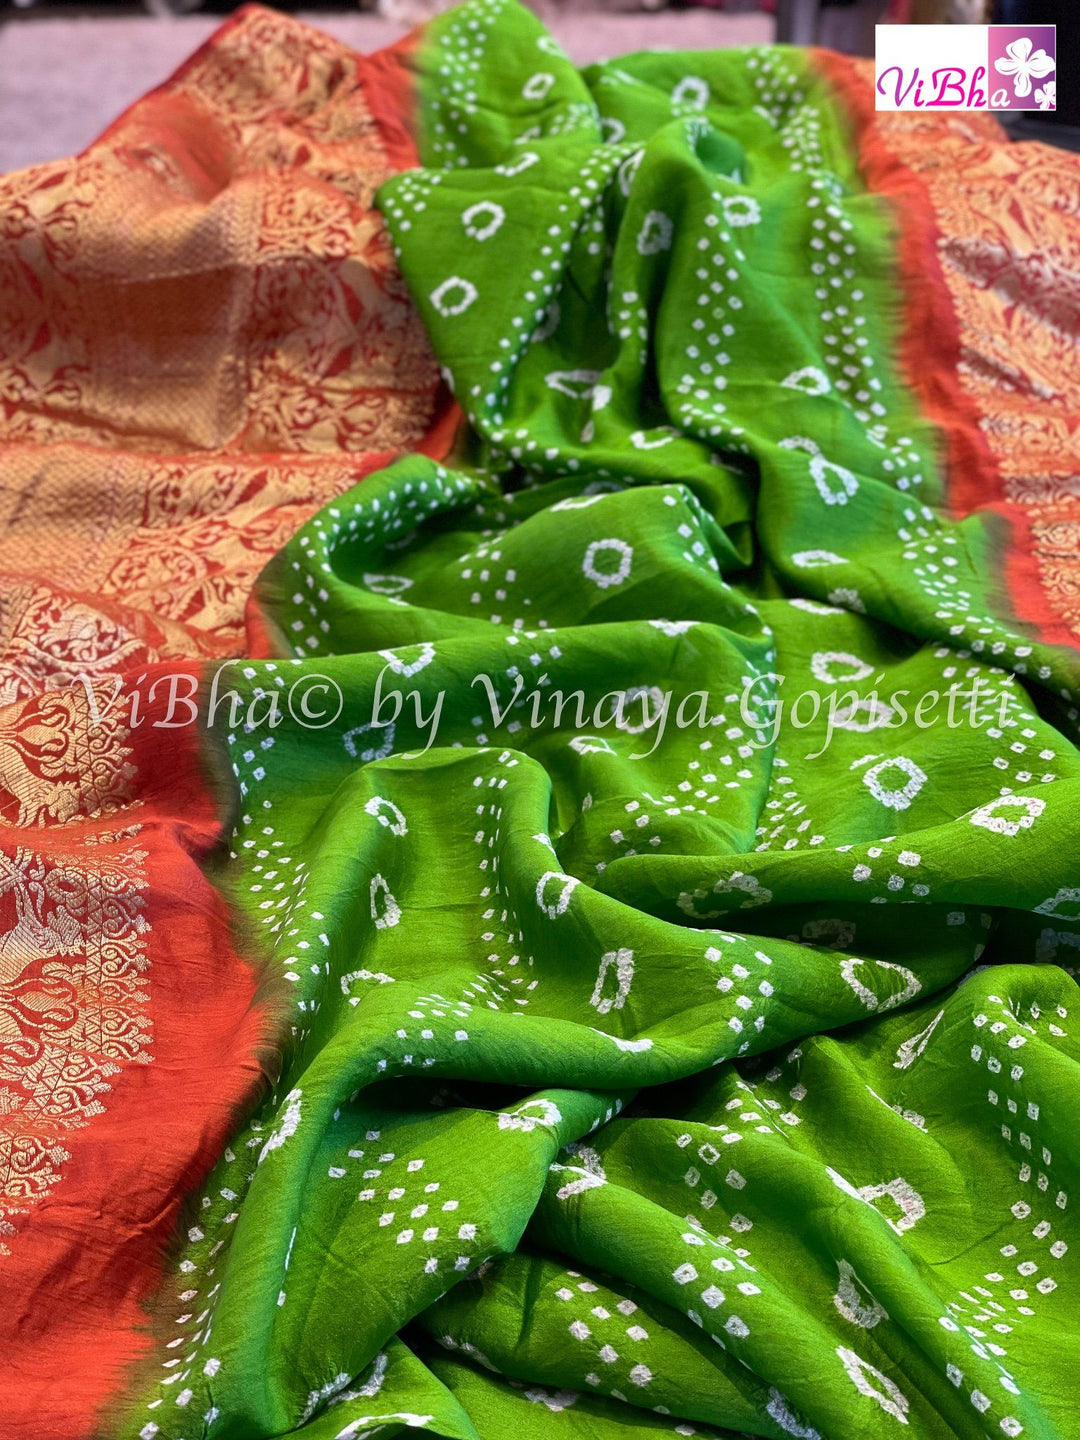 Bandhni Saree - Parrot Green & Orange Kanchi Bandhini Saree